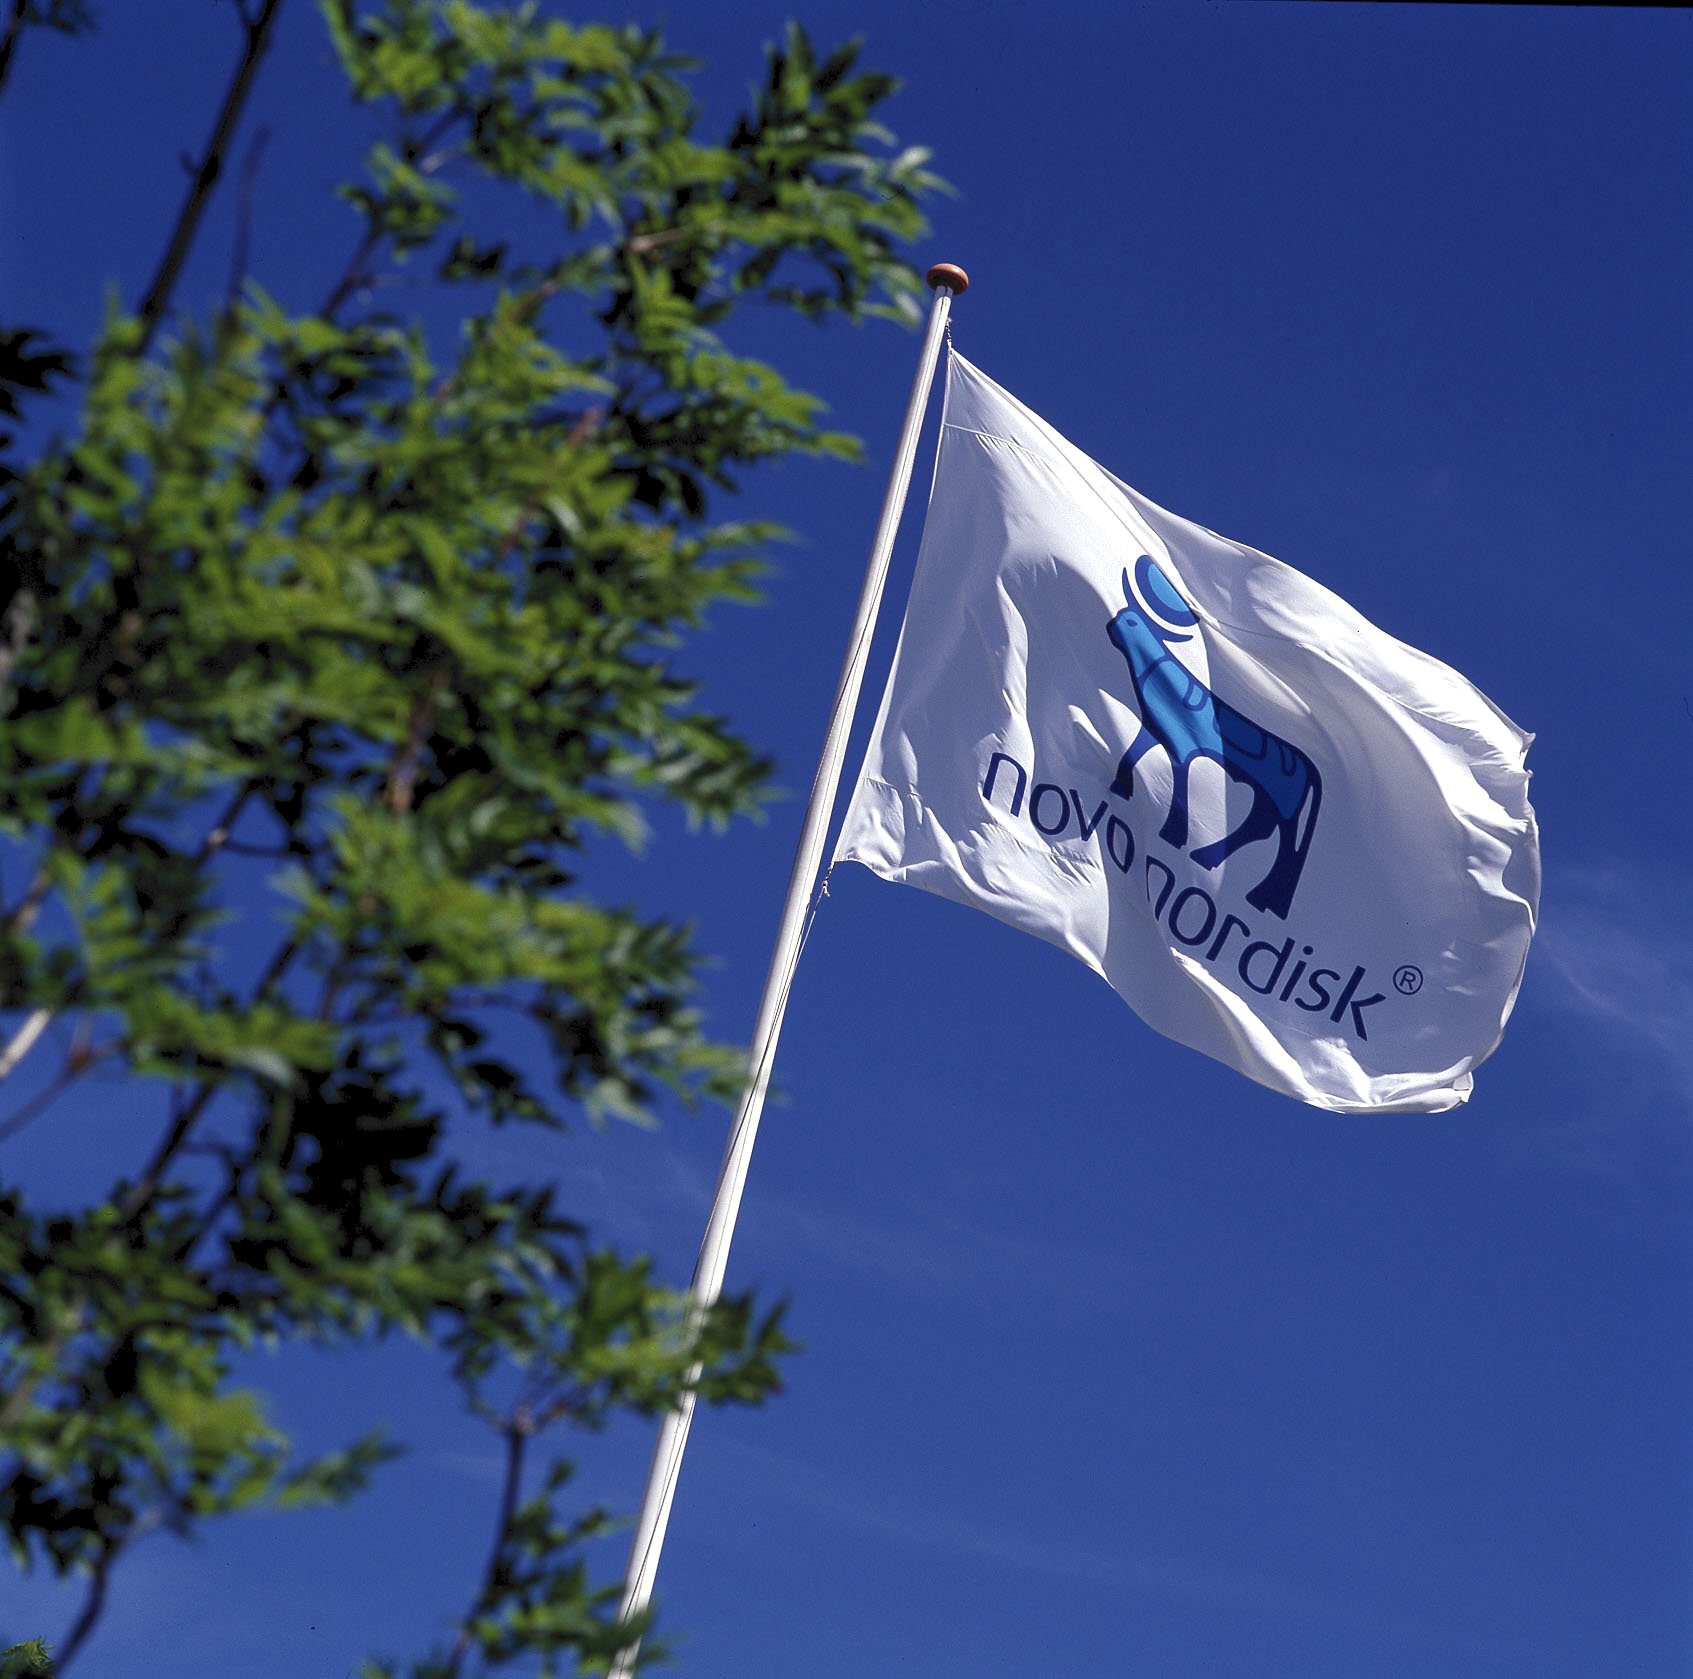 Novo Nordisk HQ flag hires